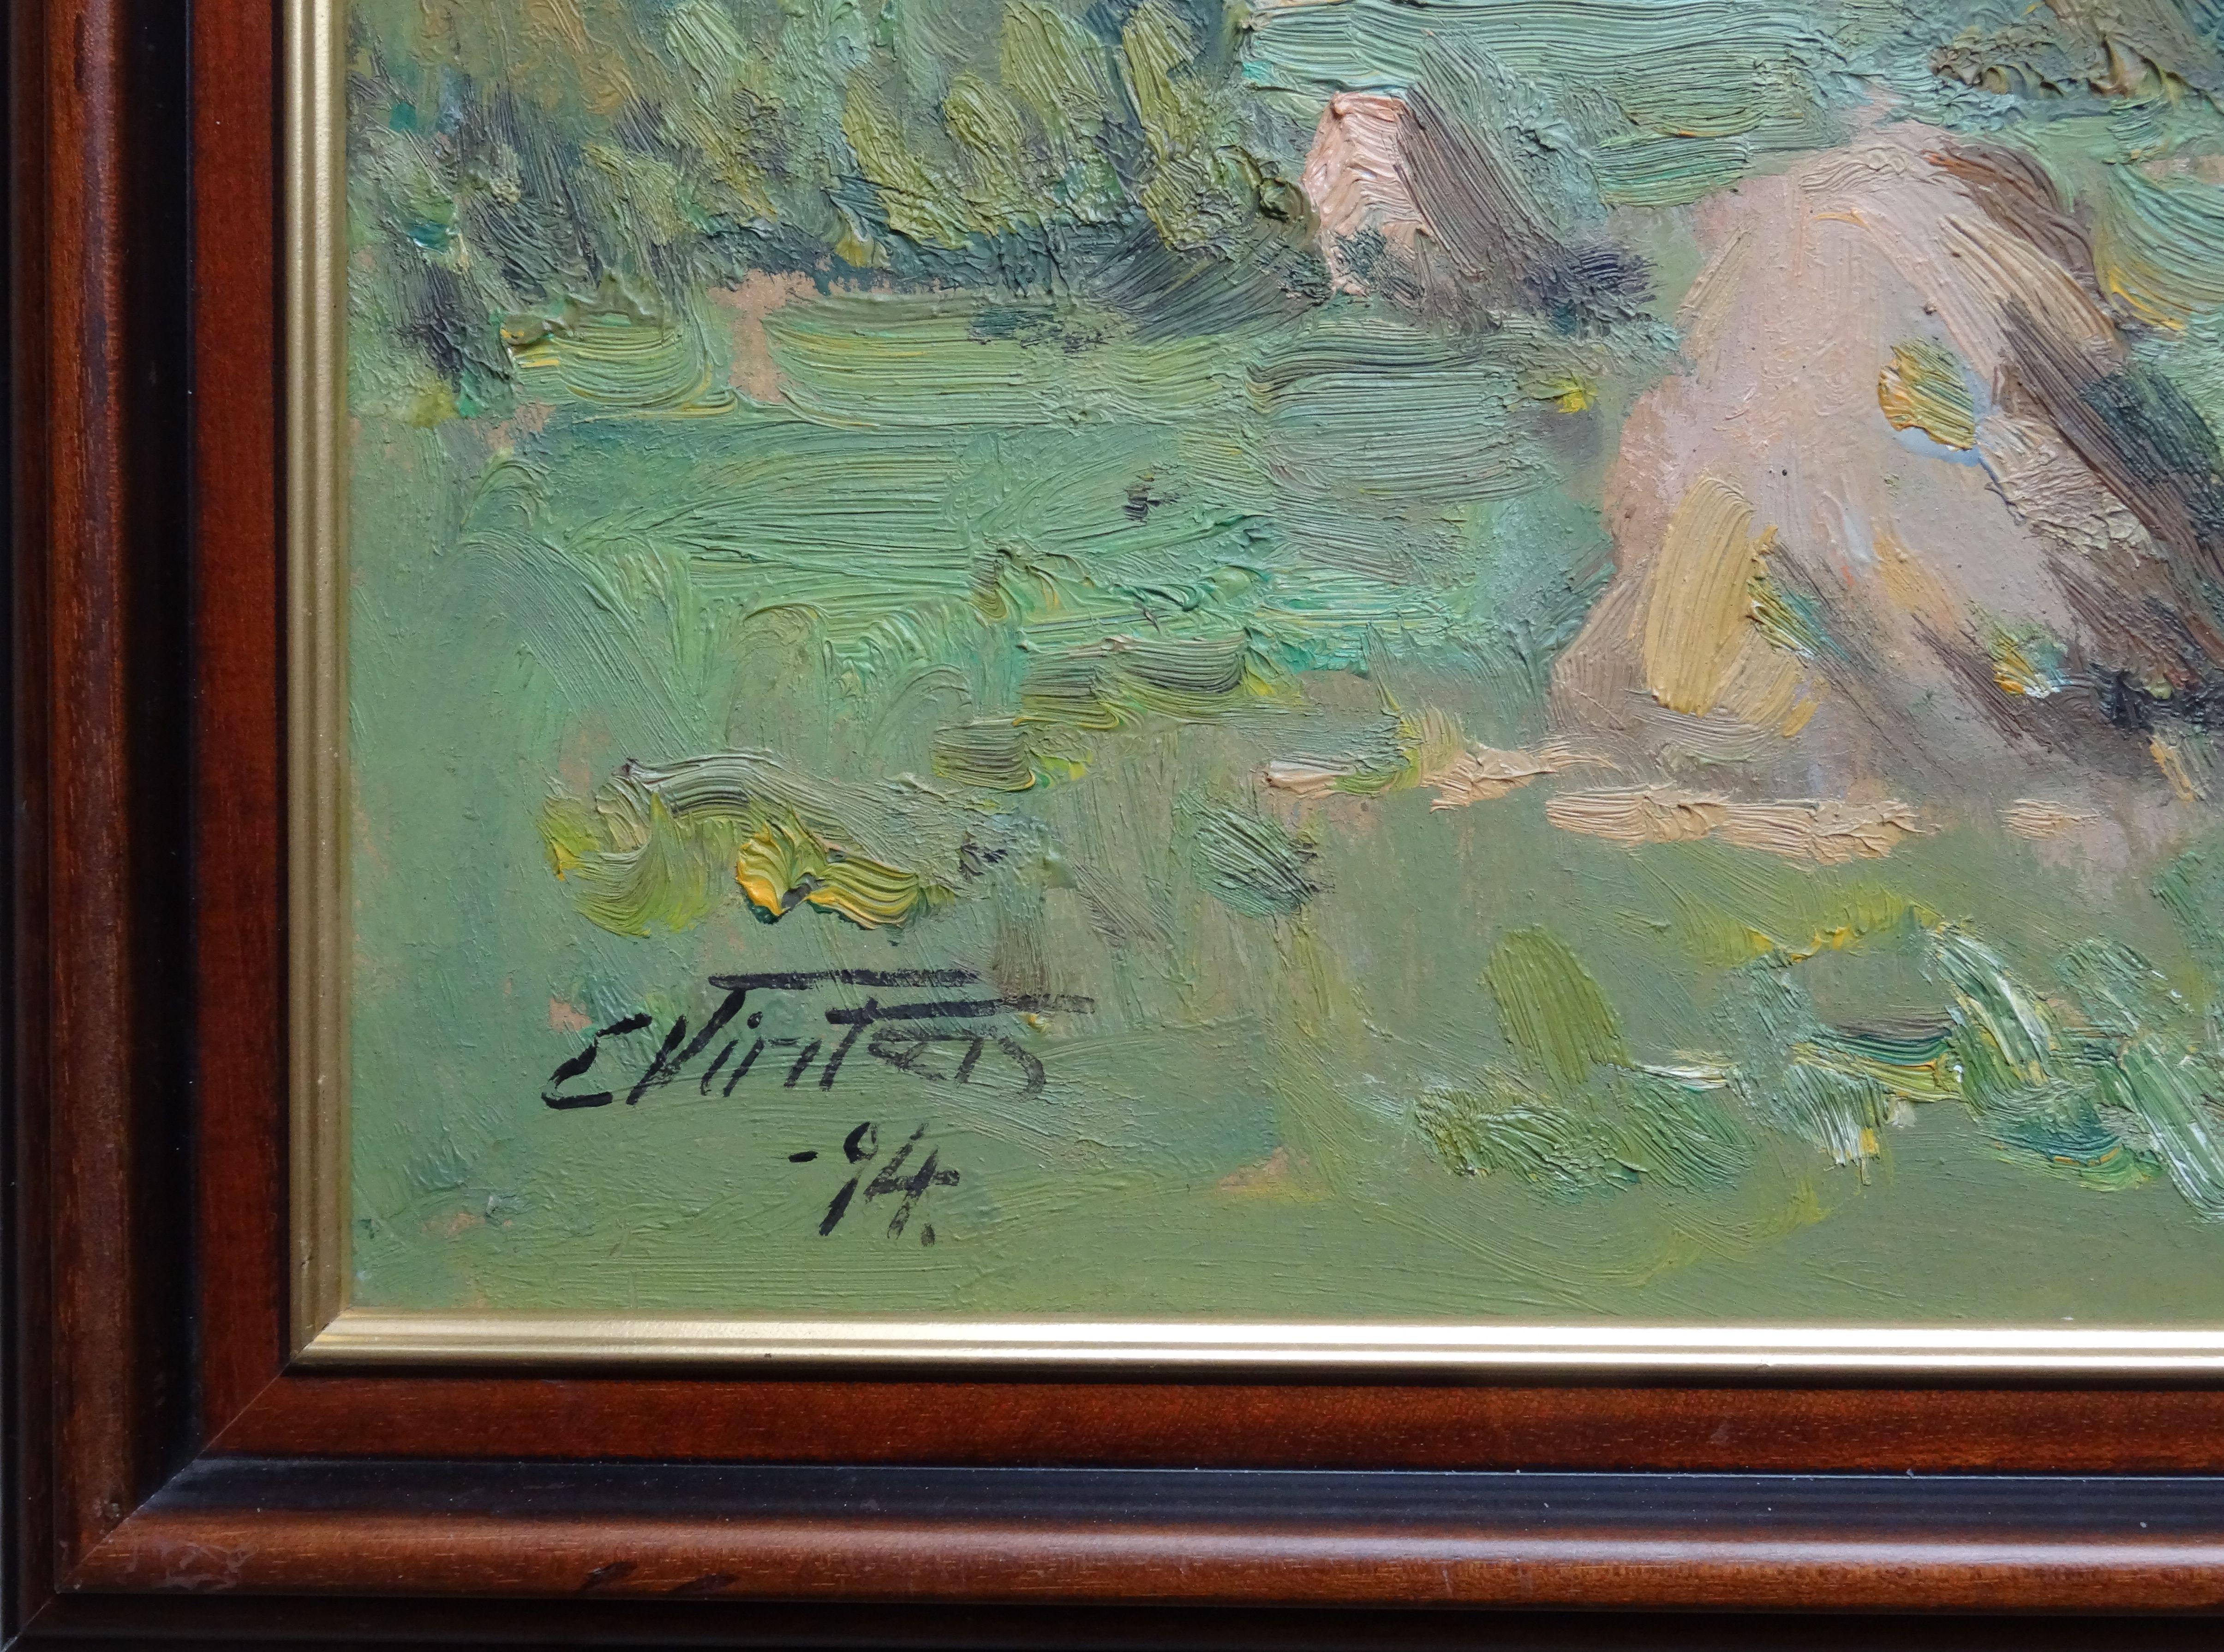  Sommertag. 1994, Öl auf Karton, 45x58 cm, Öl (Impressionismus), Art, von Edgars Vinters